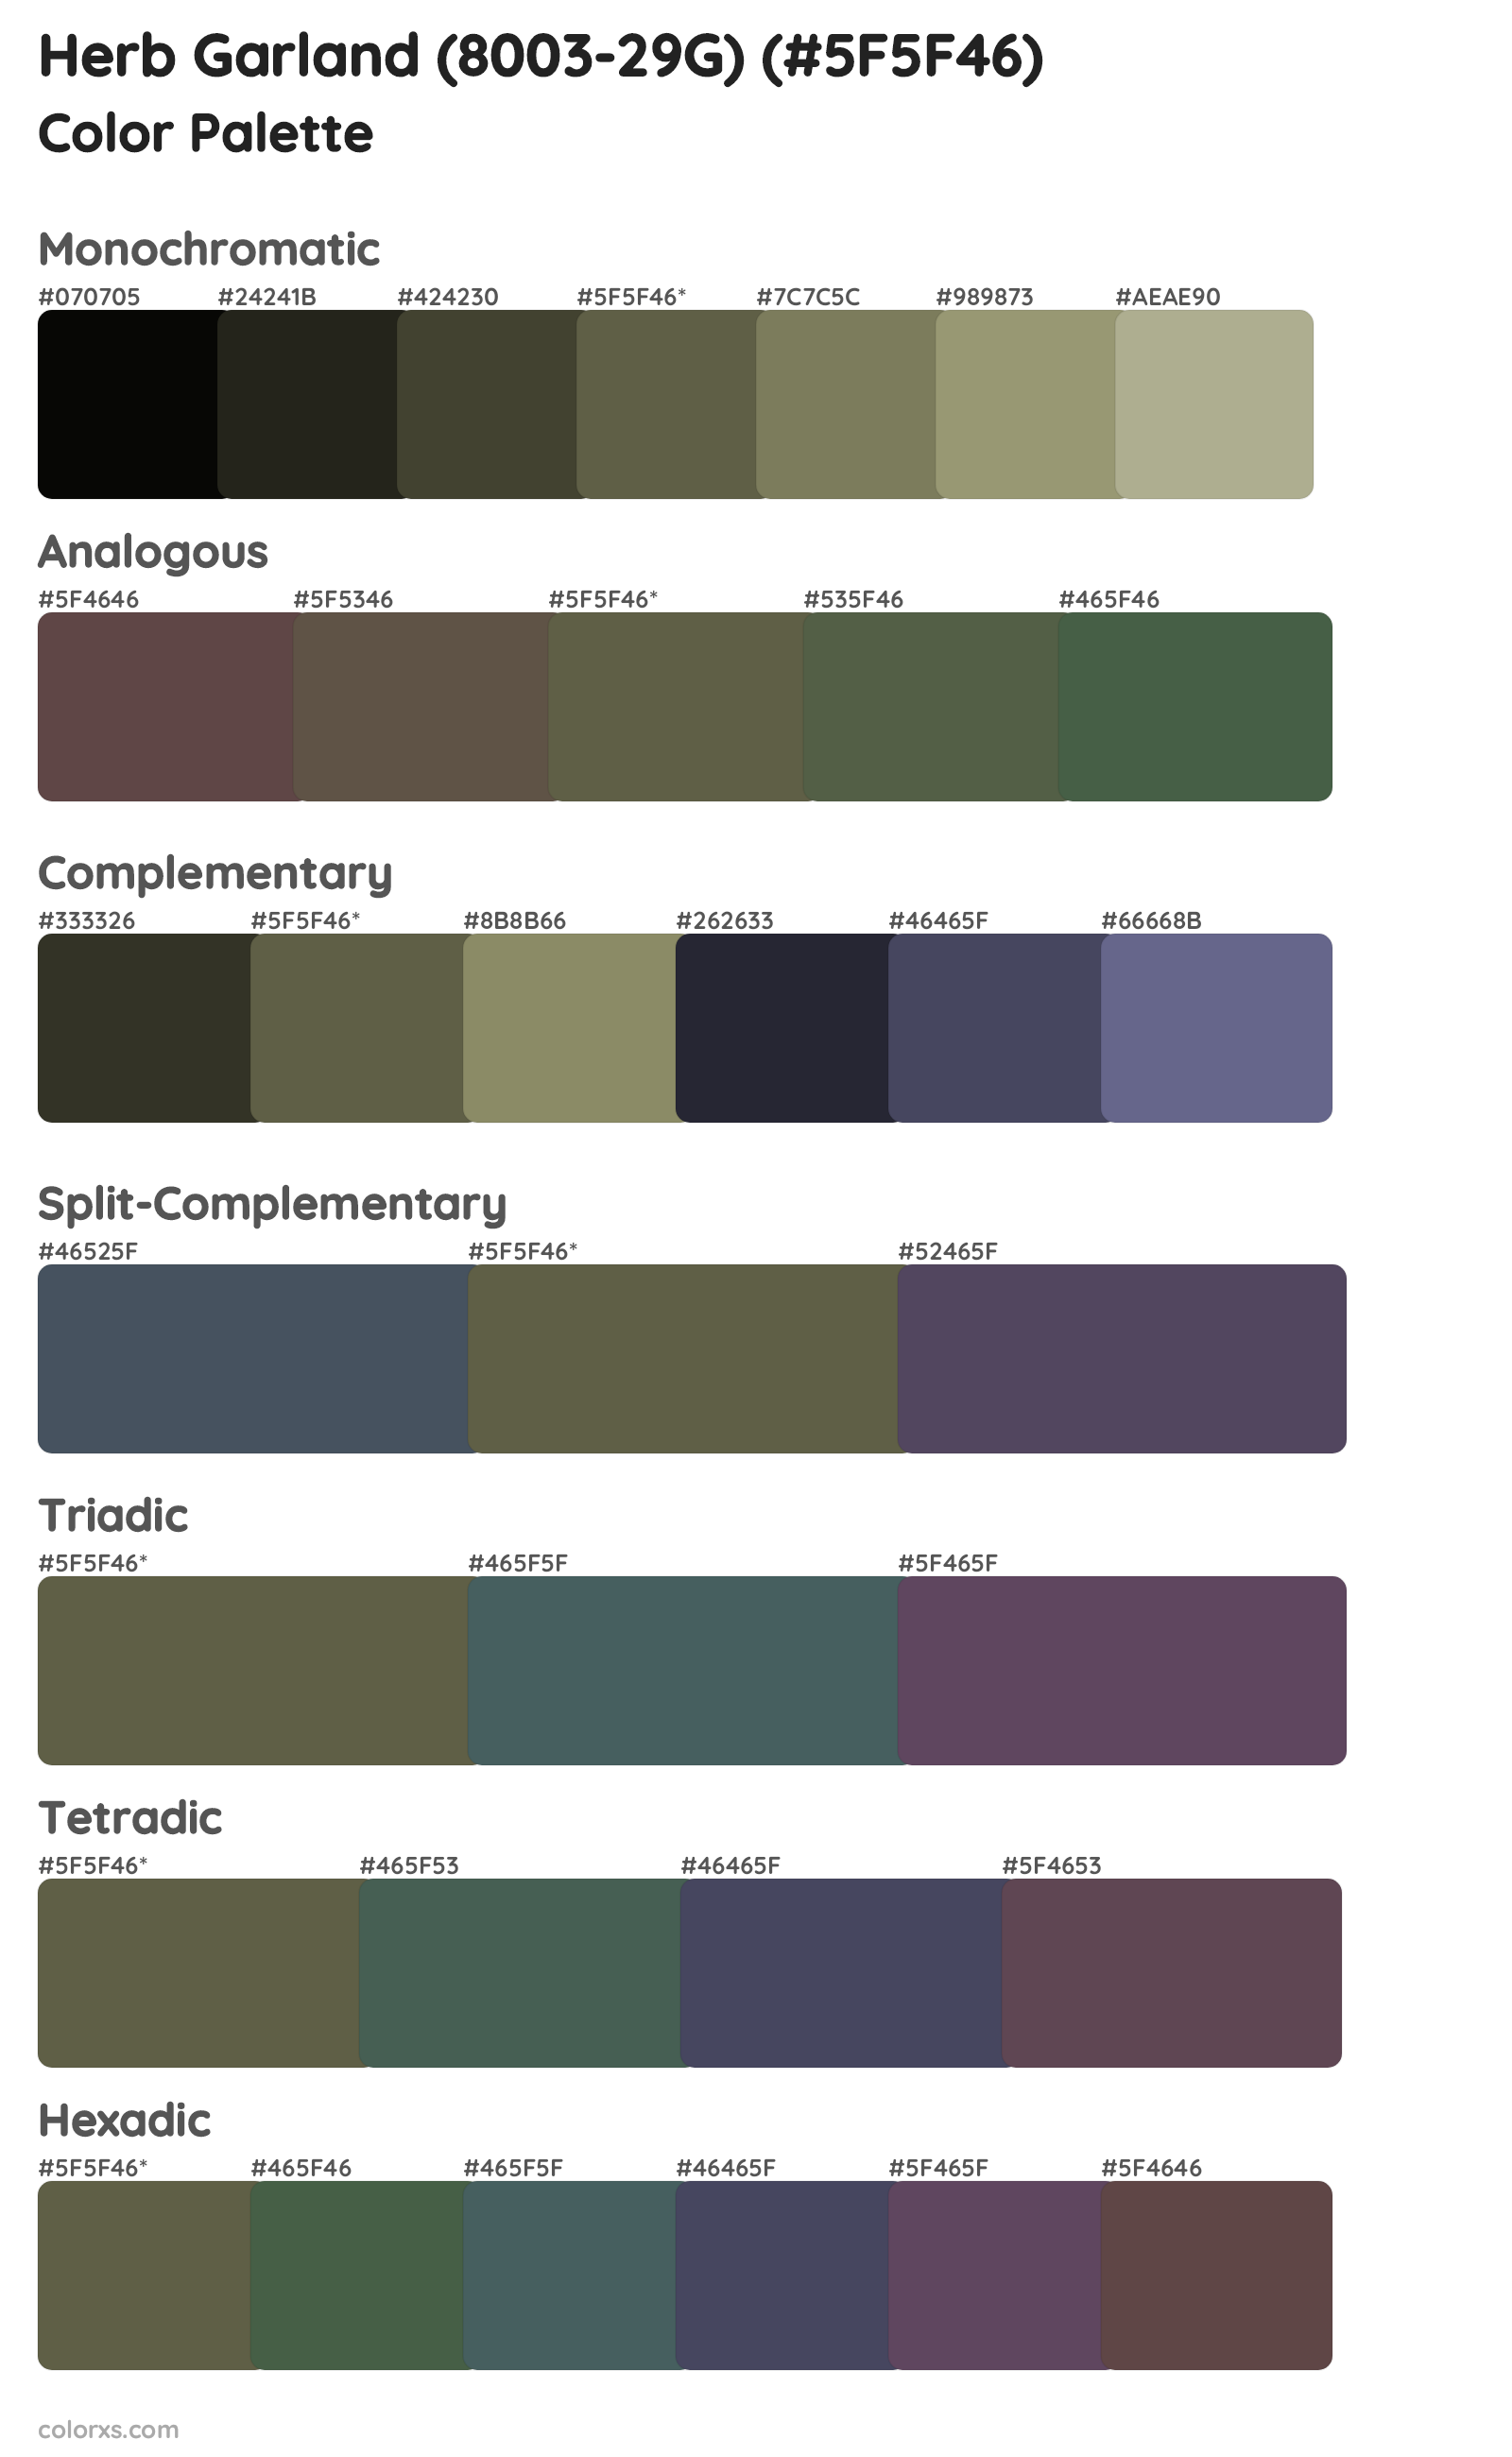 Herb Garland (8003-29G) Color Scheme Palettes